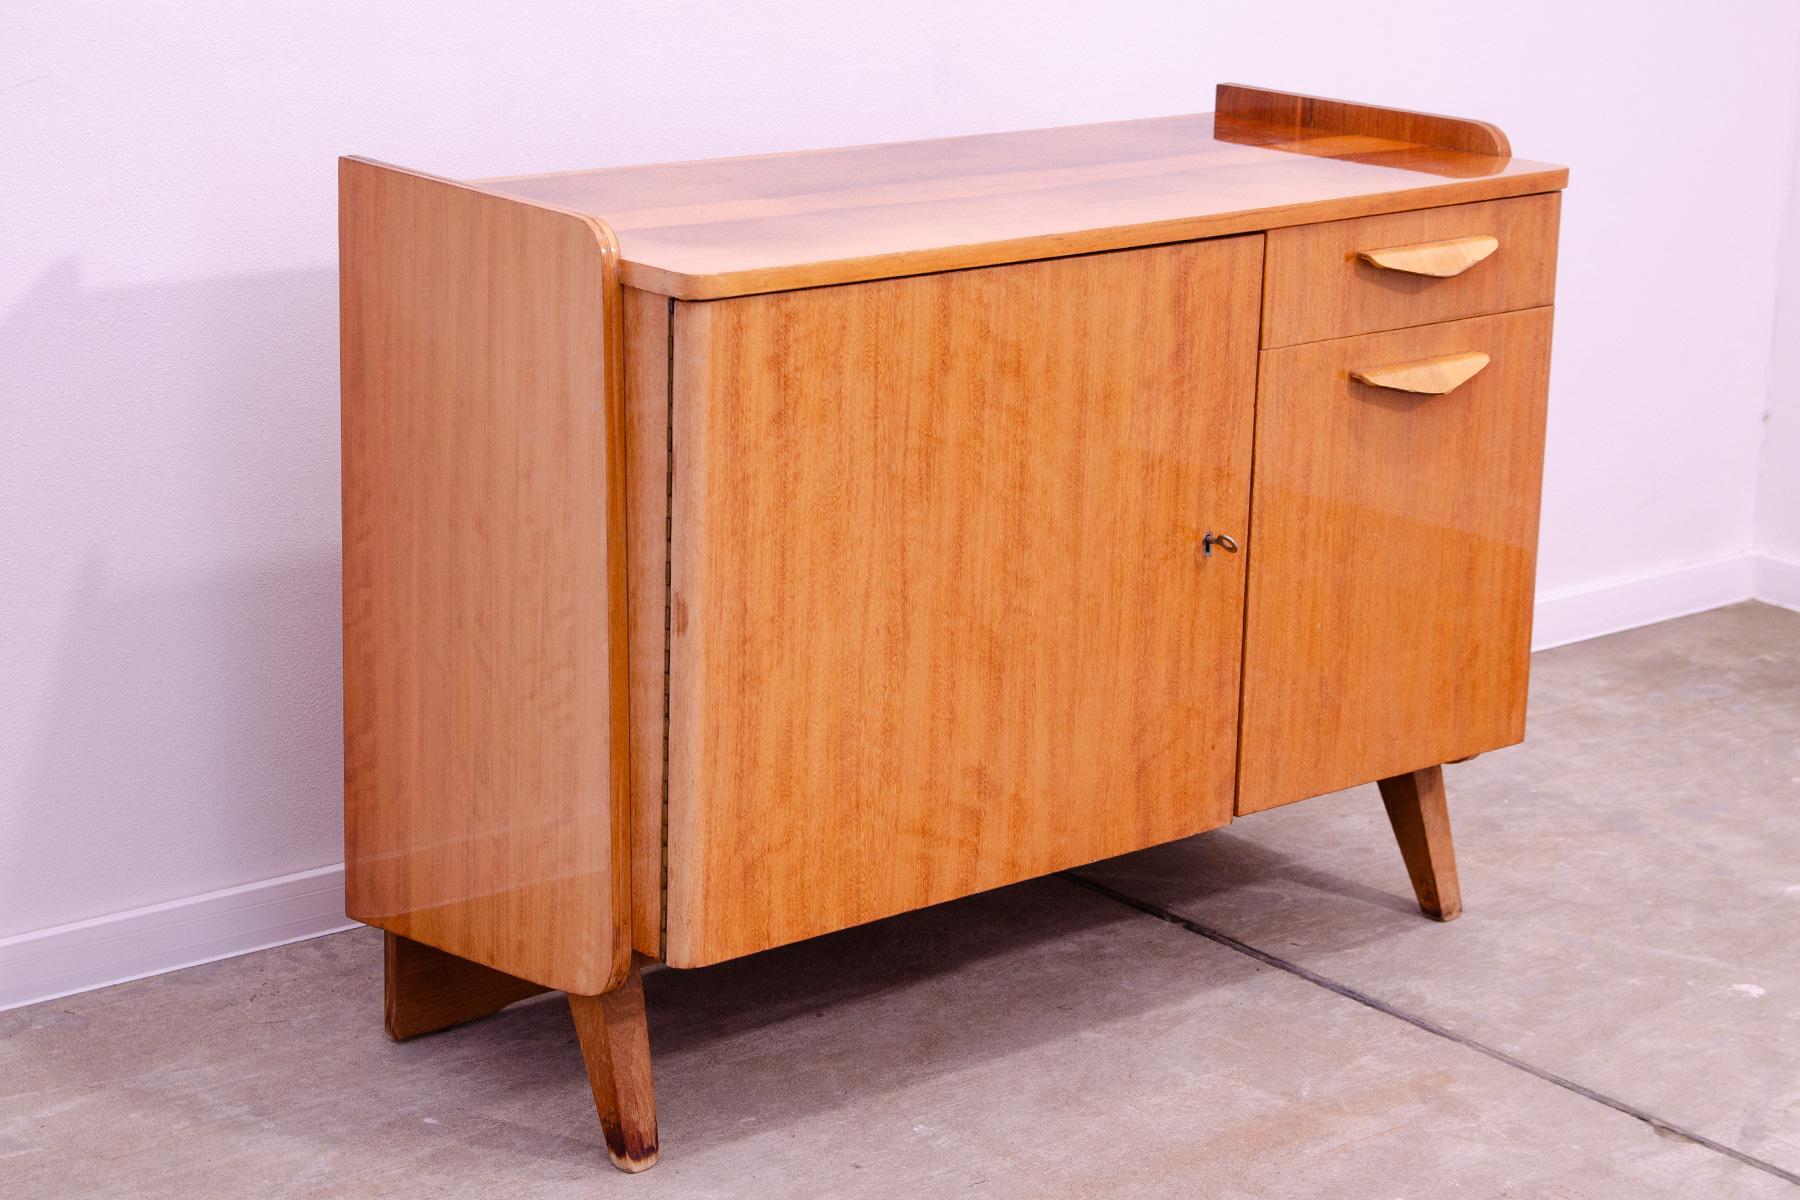 Vintage-Schränkchen oder TV-Tisch aus der Mitte des Jahrhunderts aus den 1960er Jahren. Er wurde von František Jirák entworfen und von der Firma Tatra nábytok in der ehemaligen Tschechoslowakei hergestellt. Nussbaumfurnier, Sperrholz. In sehr gutem